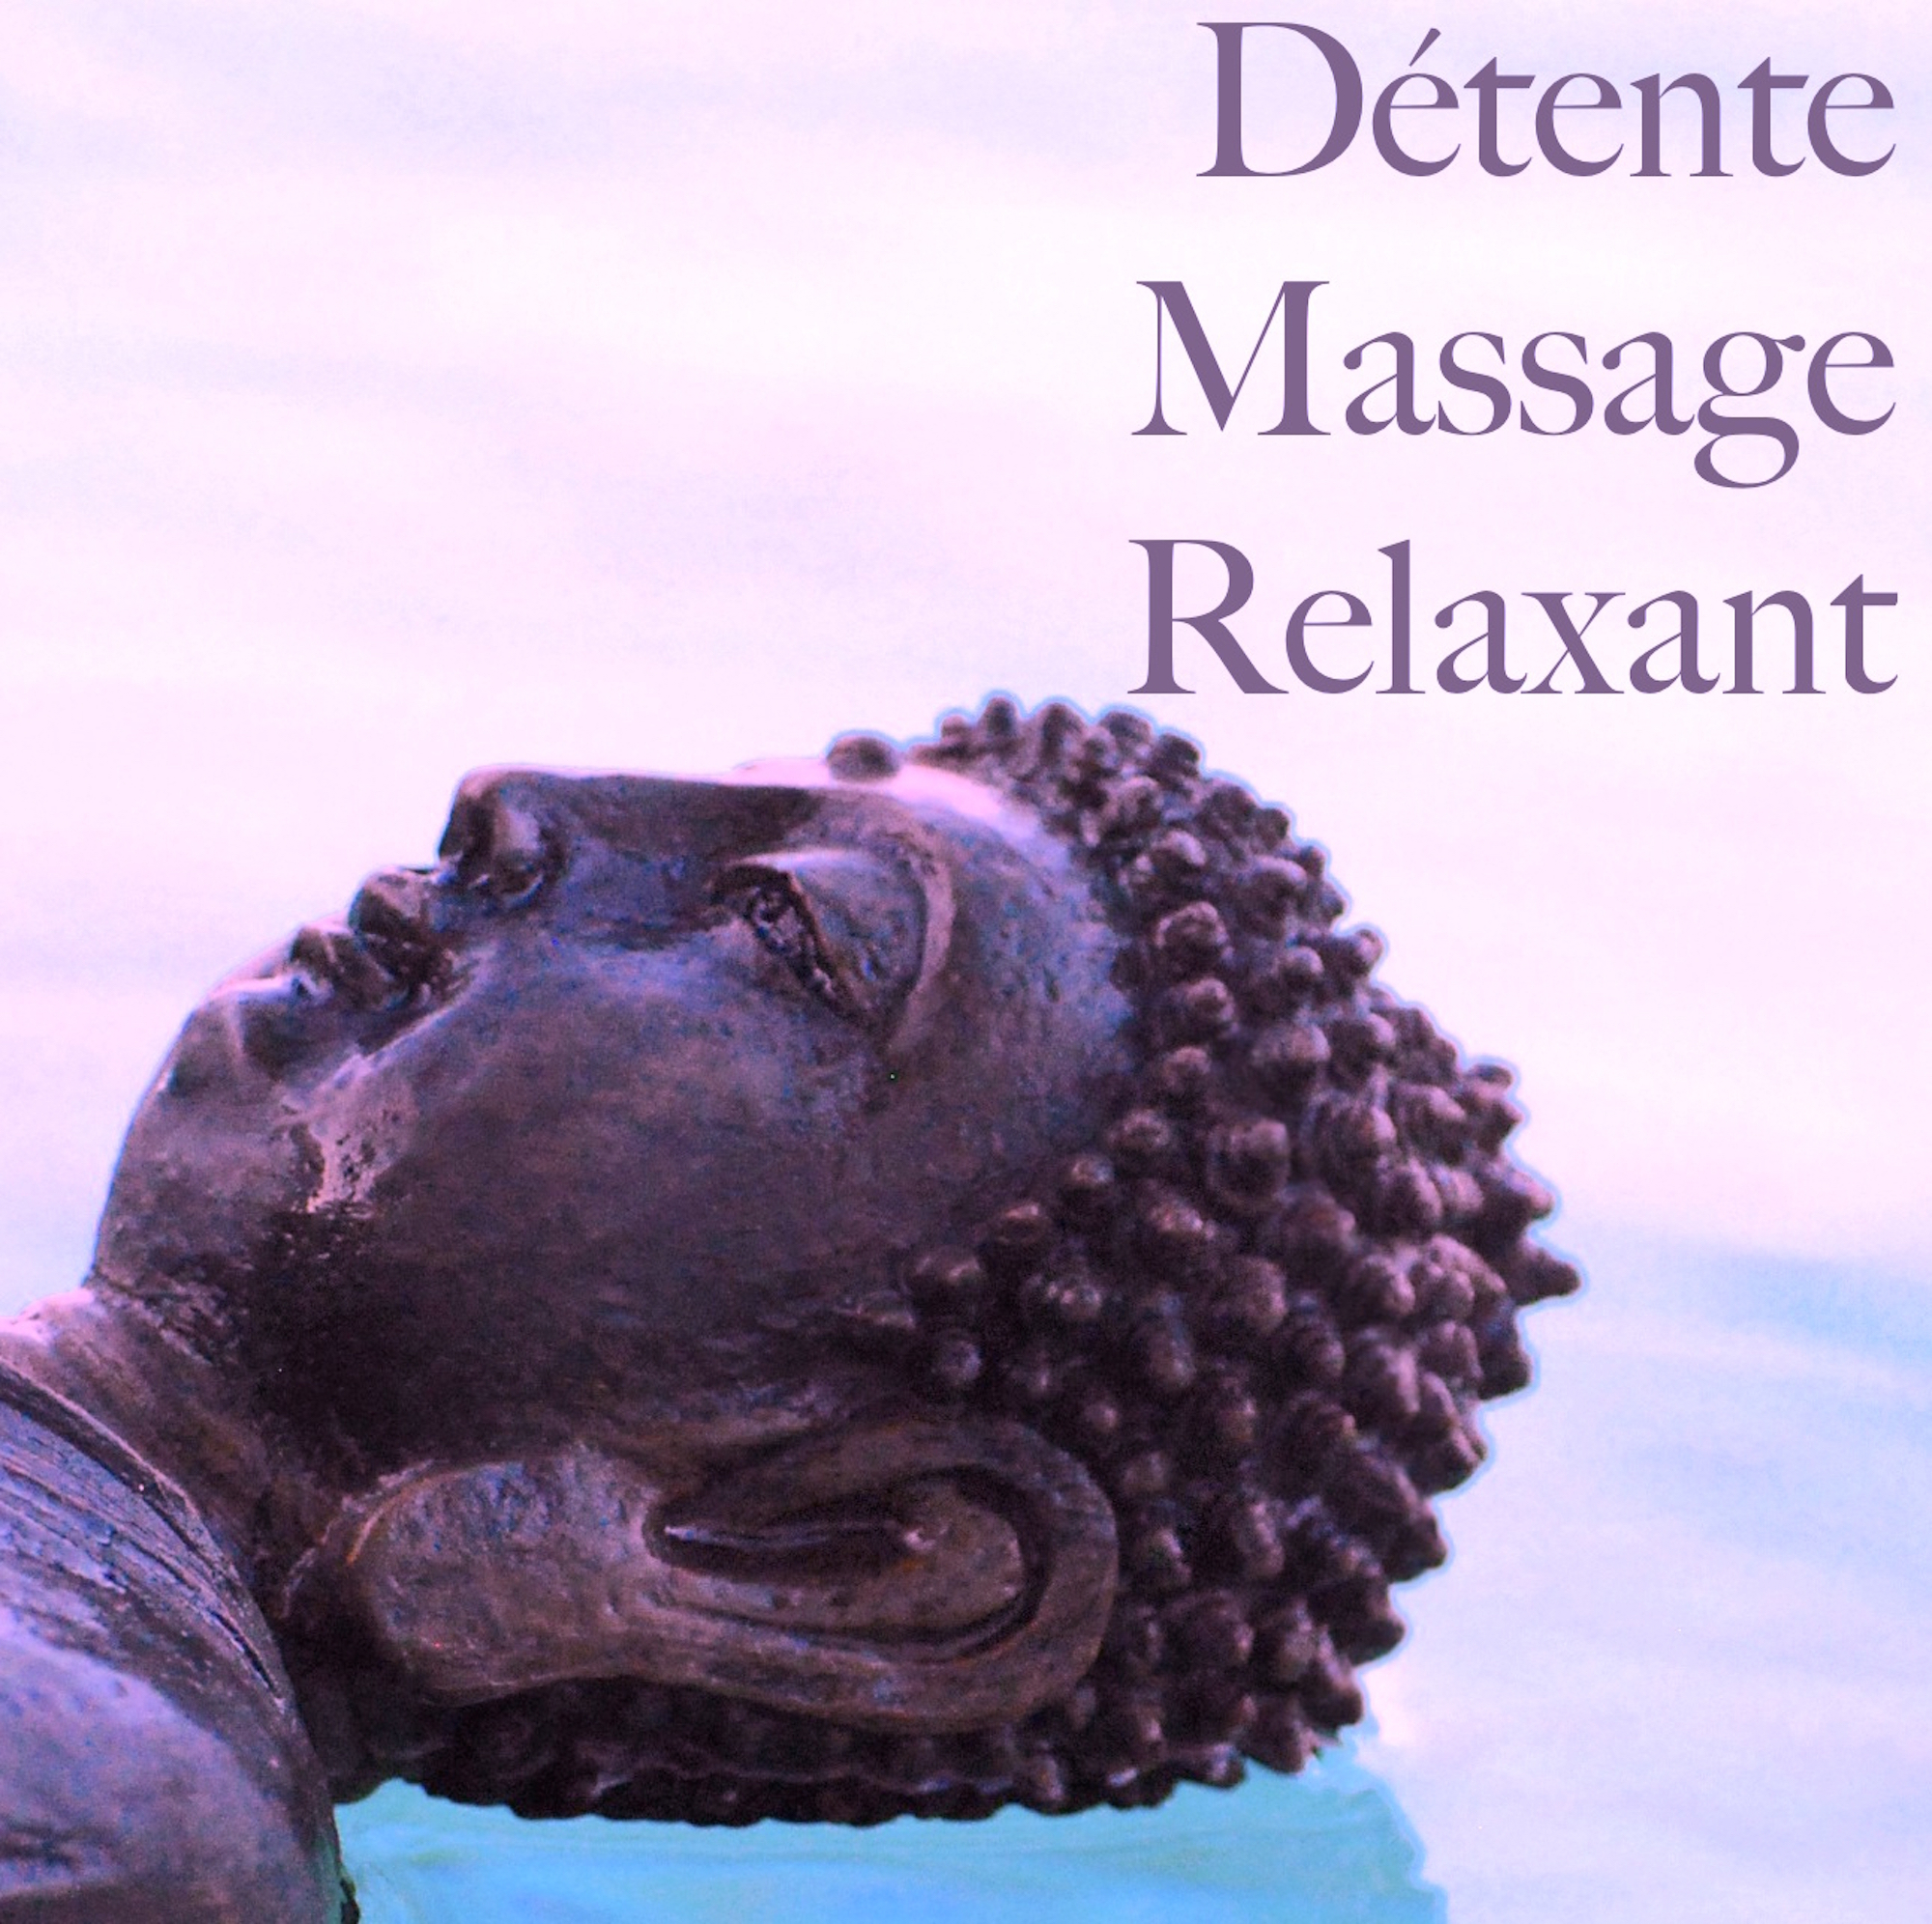 De tente Massage Relaxant: Chansons de Me ditation pour Reiki Yoga, Musique Zen de Fond pour Induction de Sommeil Profond